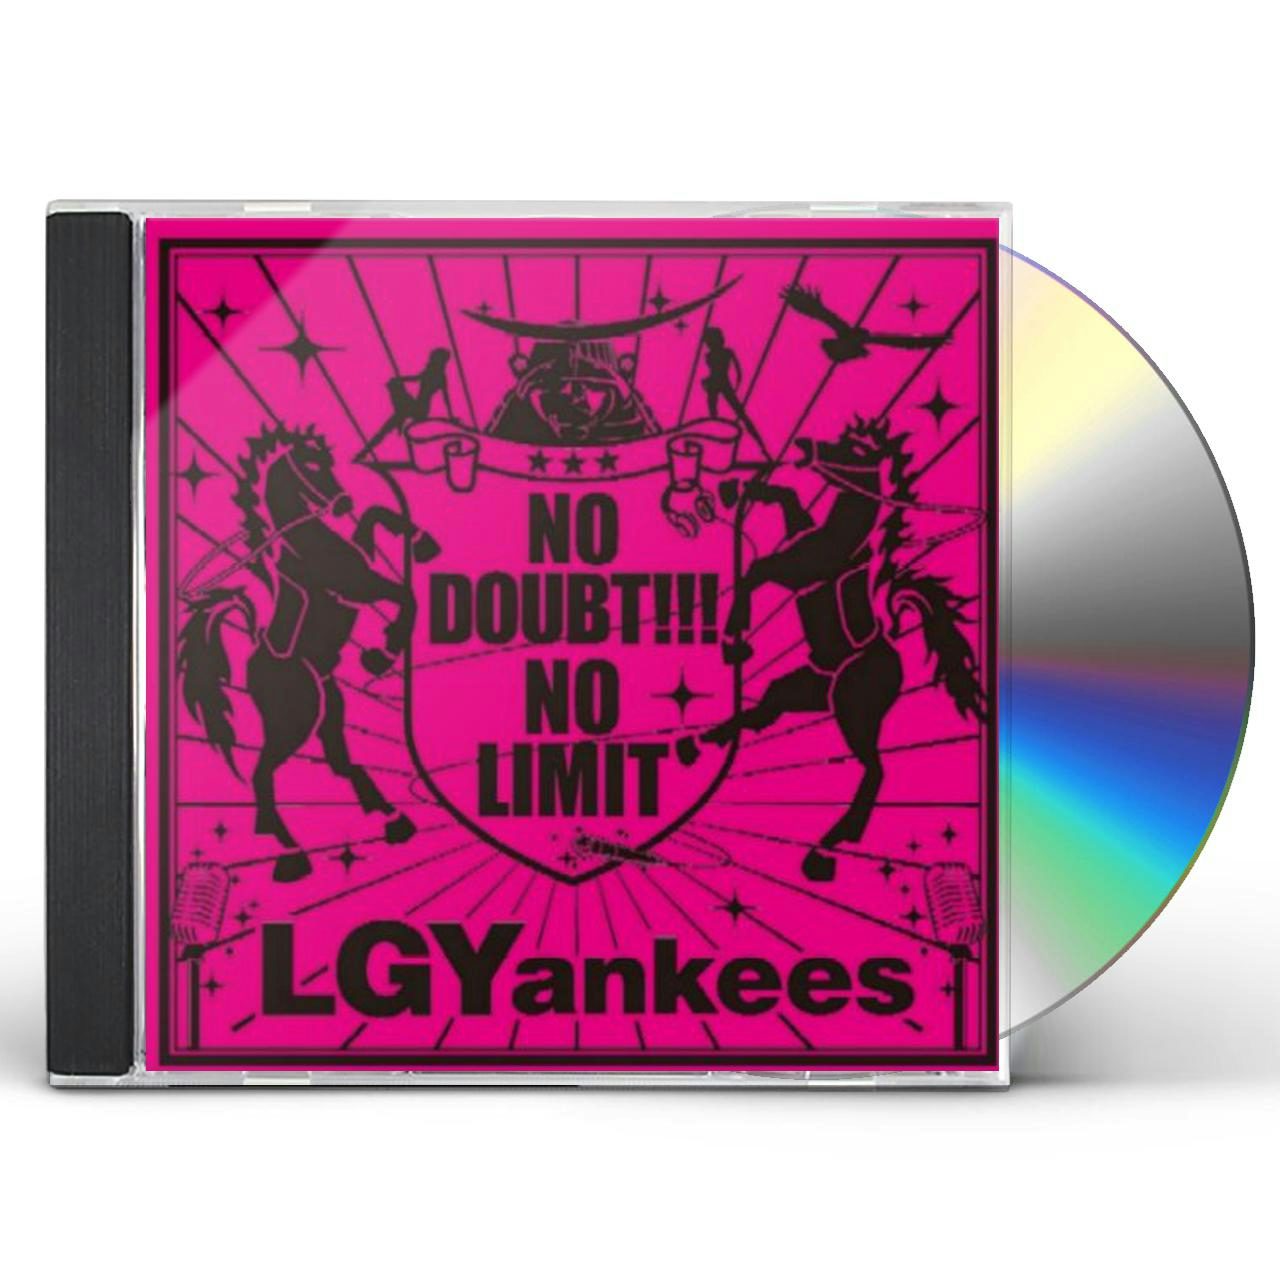 LGYankees NO DOUBT!!!-NO LIMIT CD $31.99$28.99